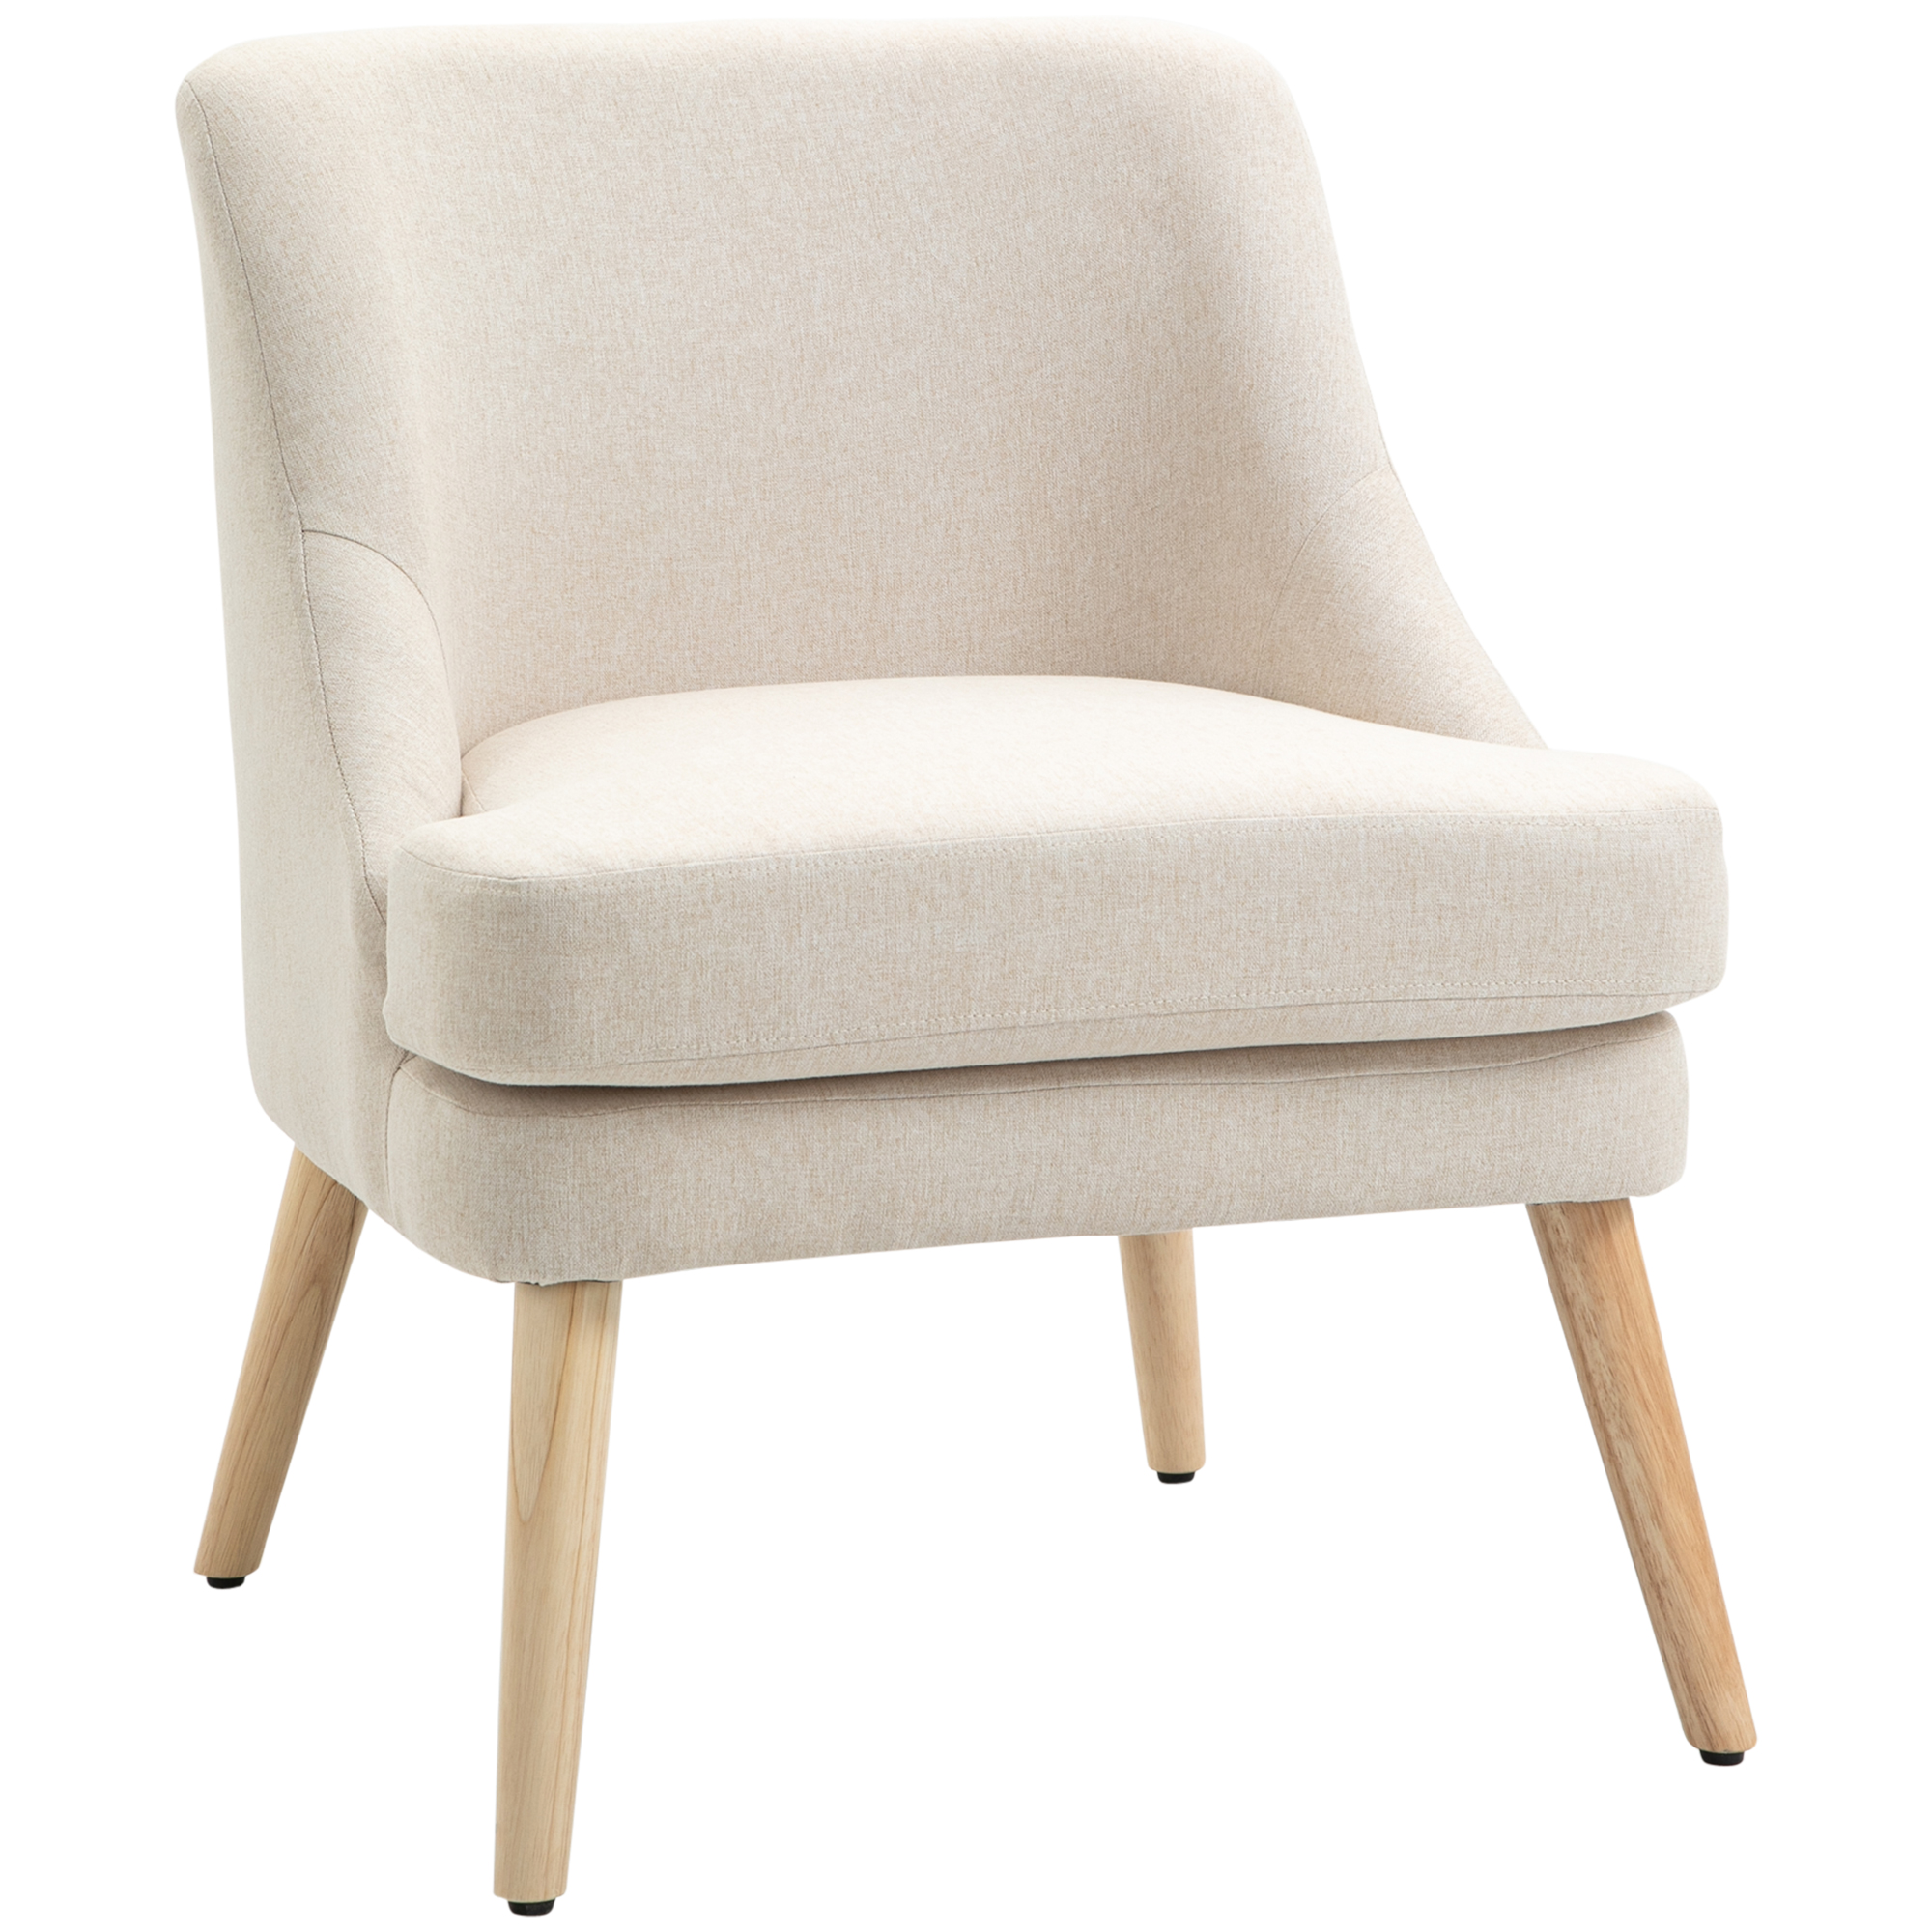 Fauteuil scandinave chaise de canapé de loisirs avec un revêtement